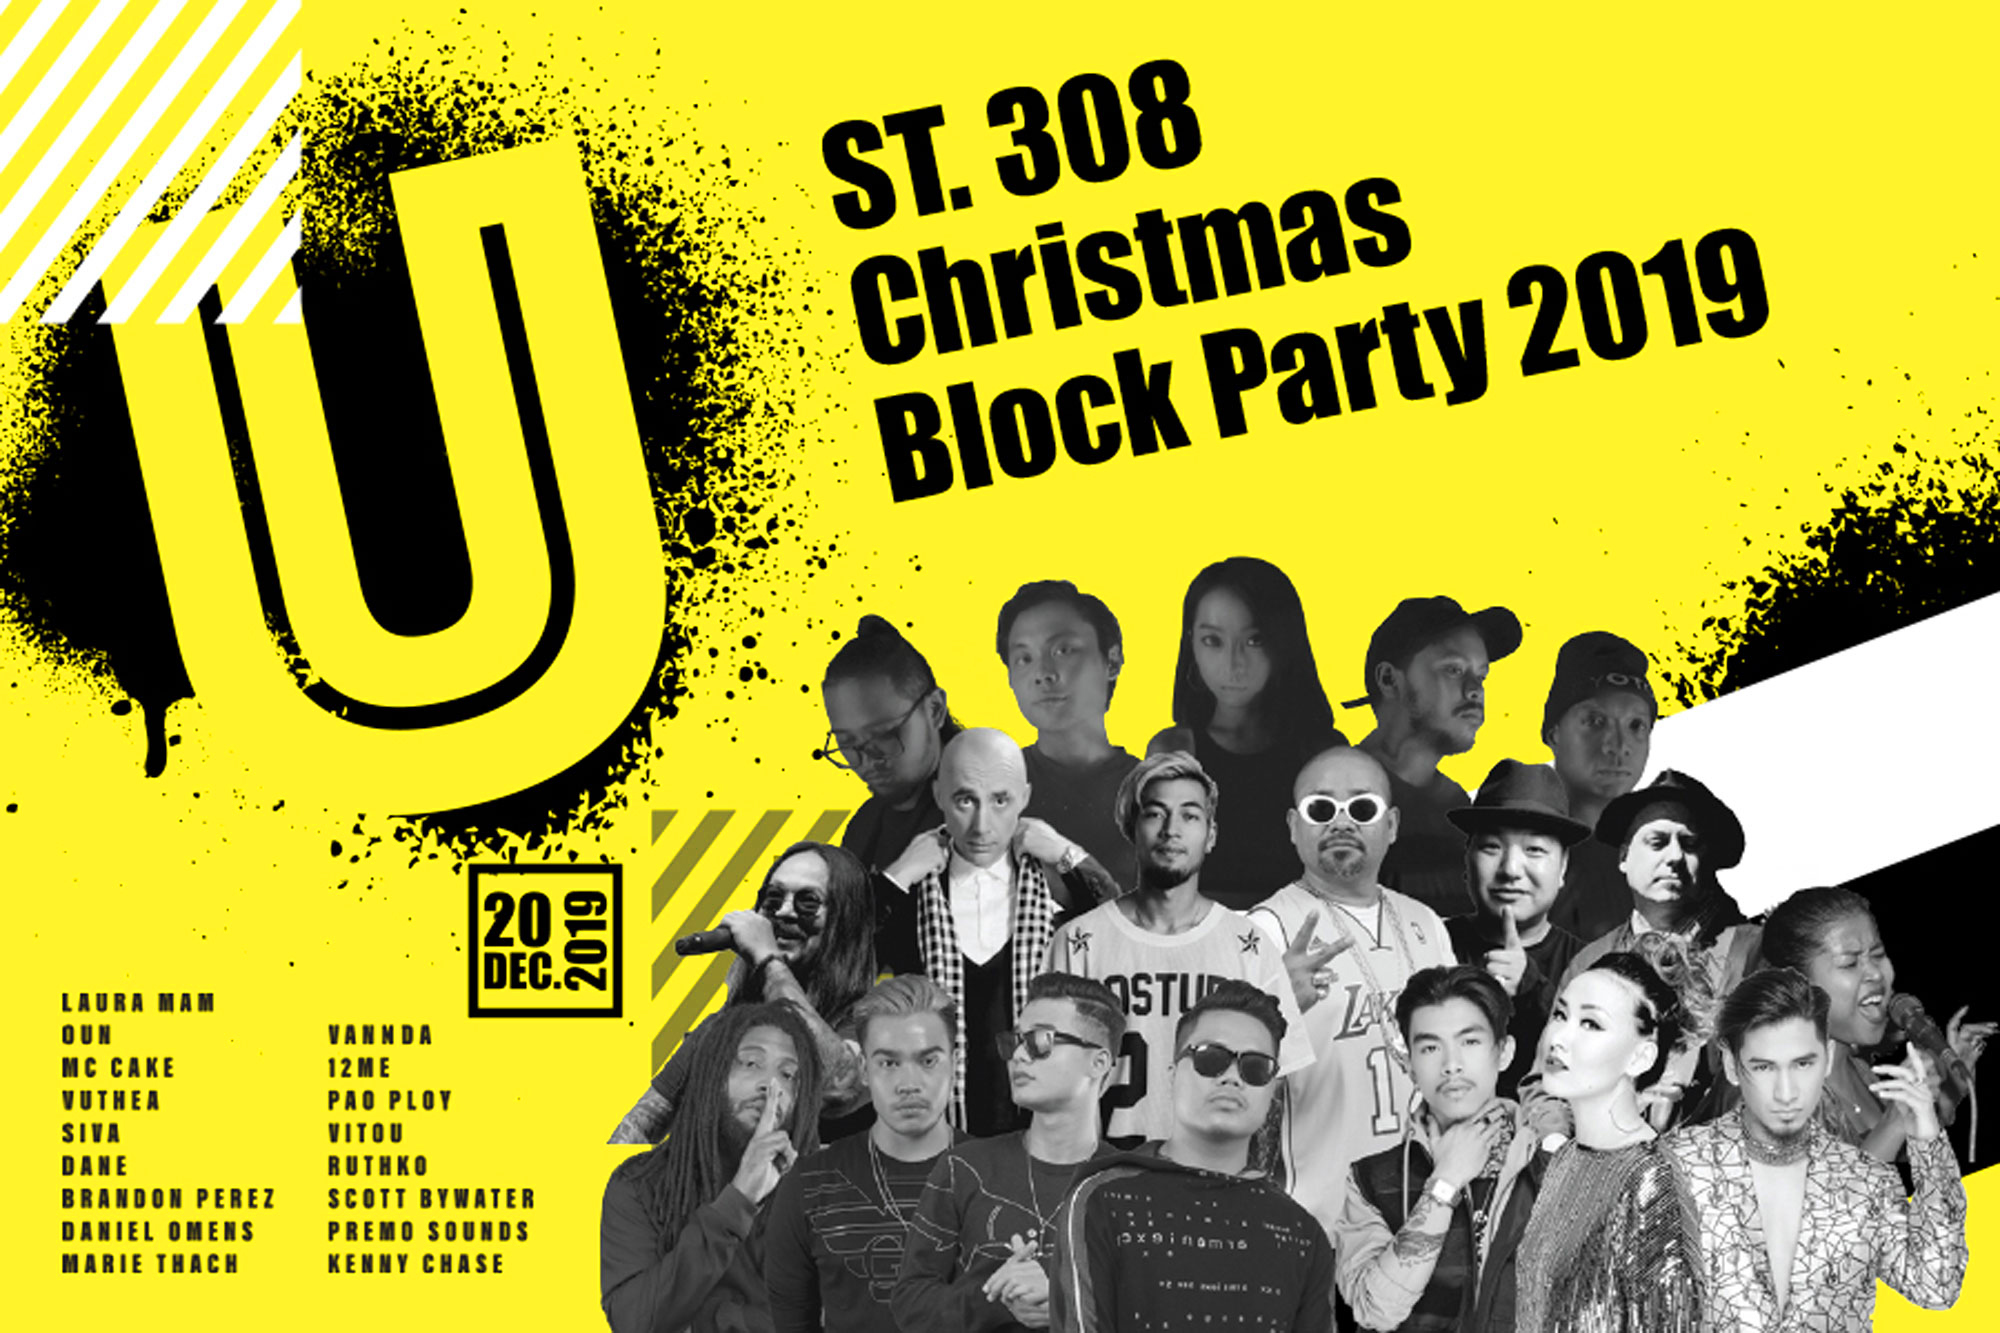 ចូលរួមកម្មវិធី street 308 Christmas Block Party រាត្រីថ្ងៃសុក្រ 20 ធ្នូនេះ